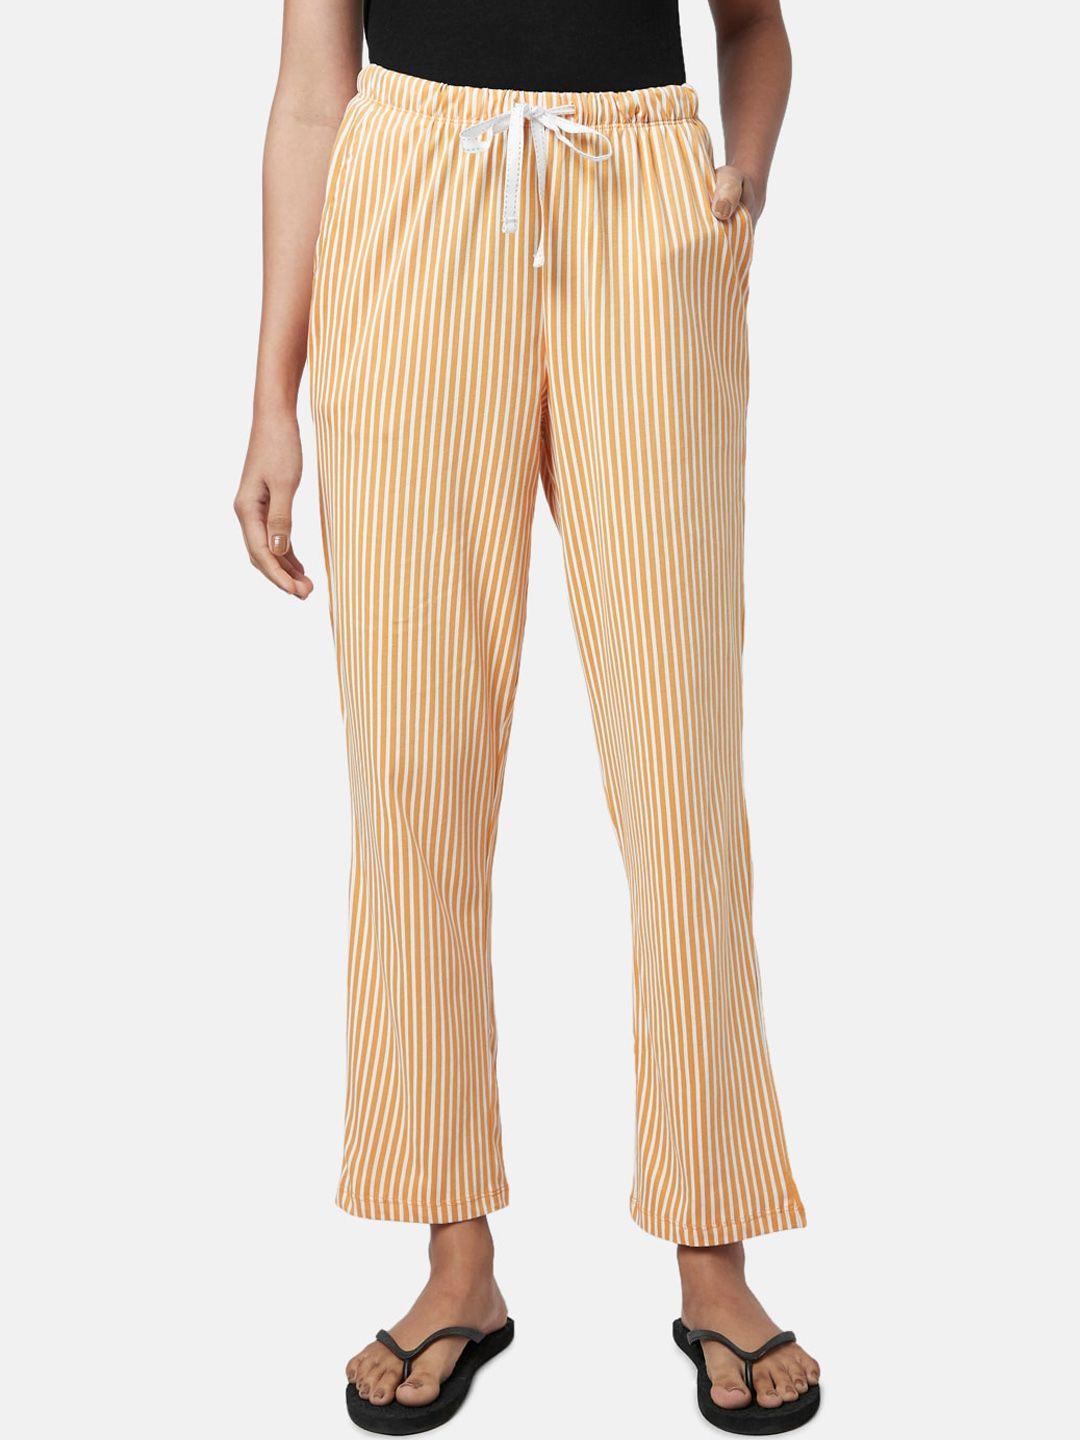 dreamz by pantaloons women striped lounge pants